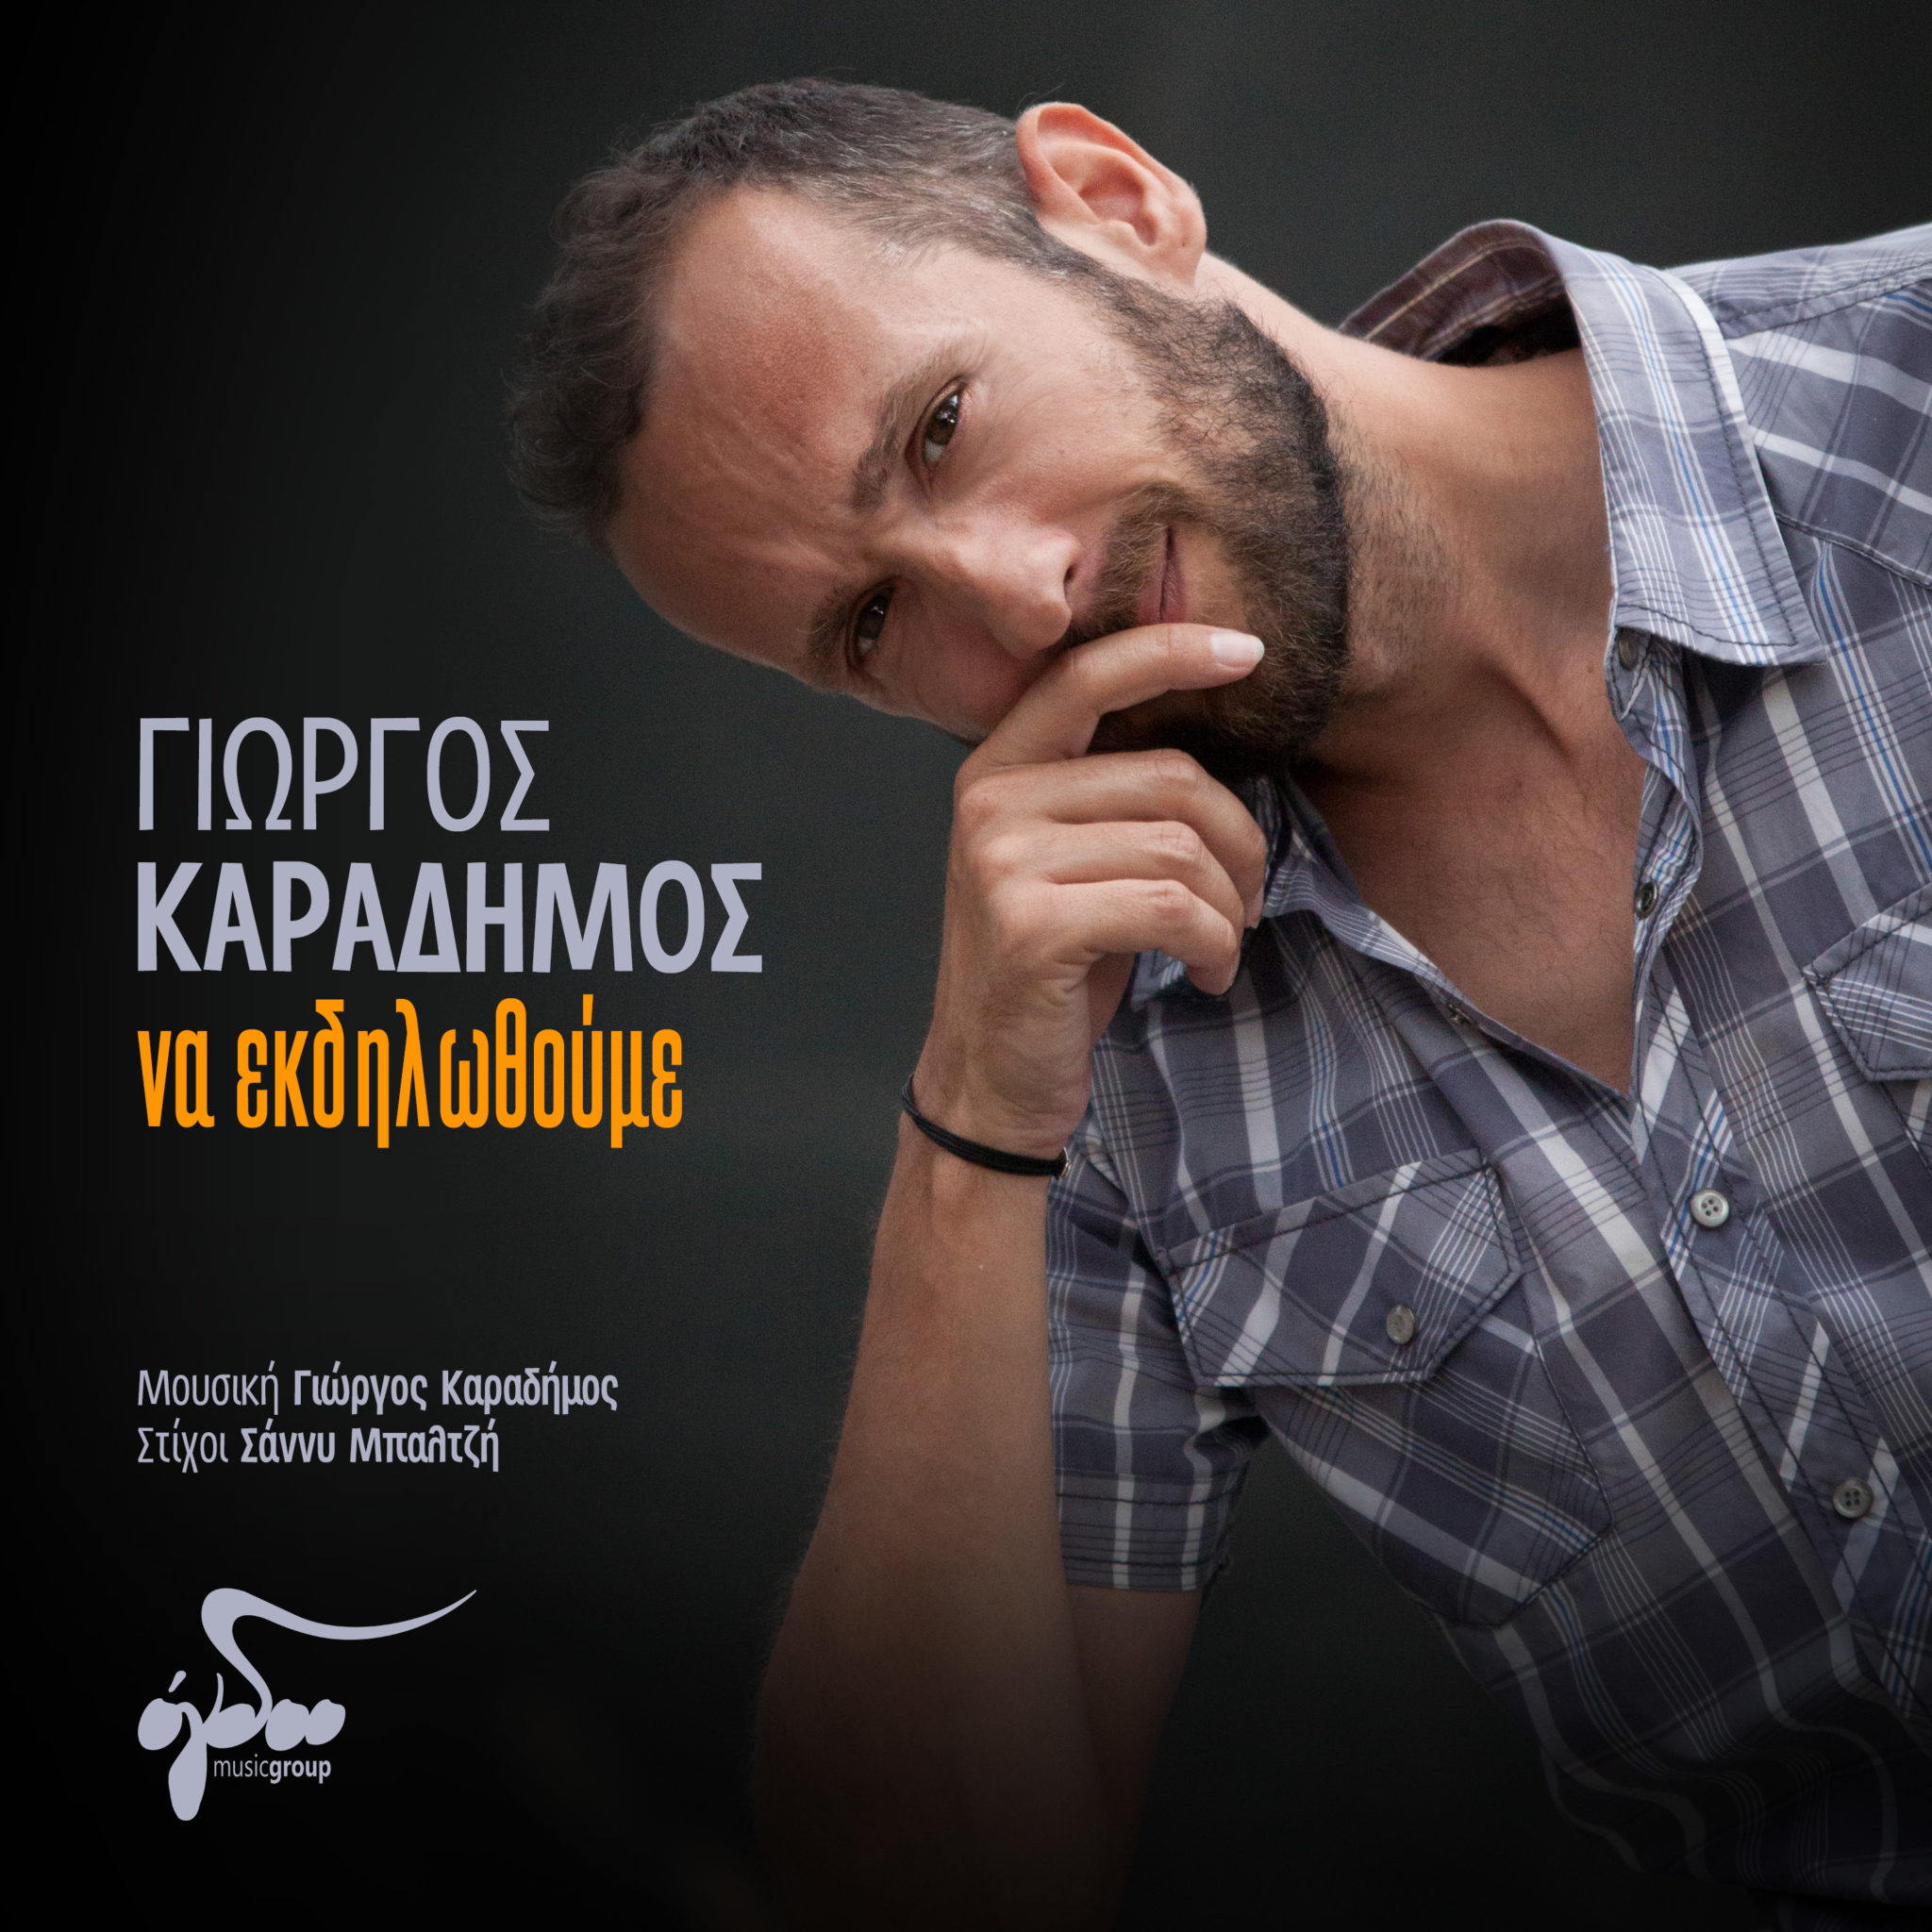 Γιώργος Καραδήμος - "Να εκδηλωθούμε" | Νέο τραγούδι | Empneusi 107 FM